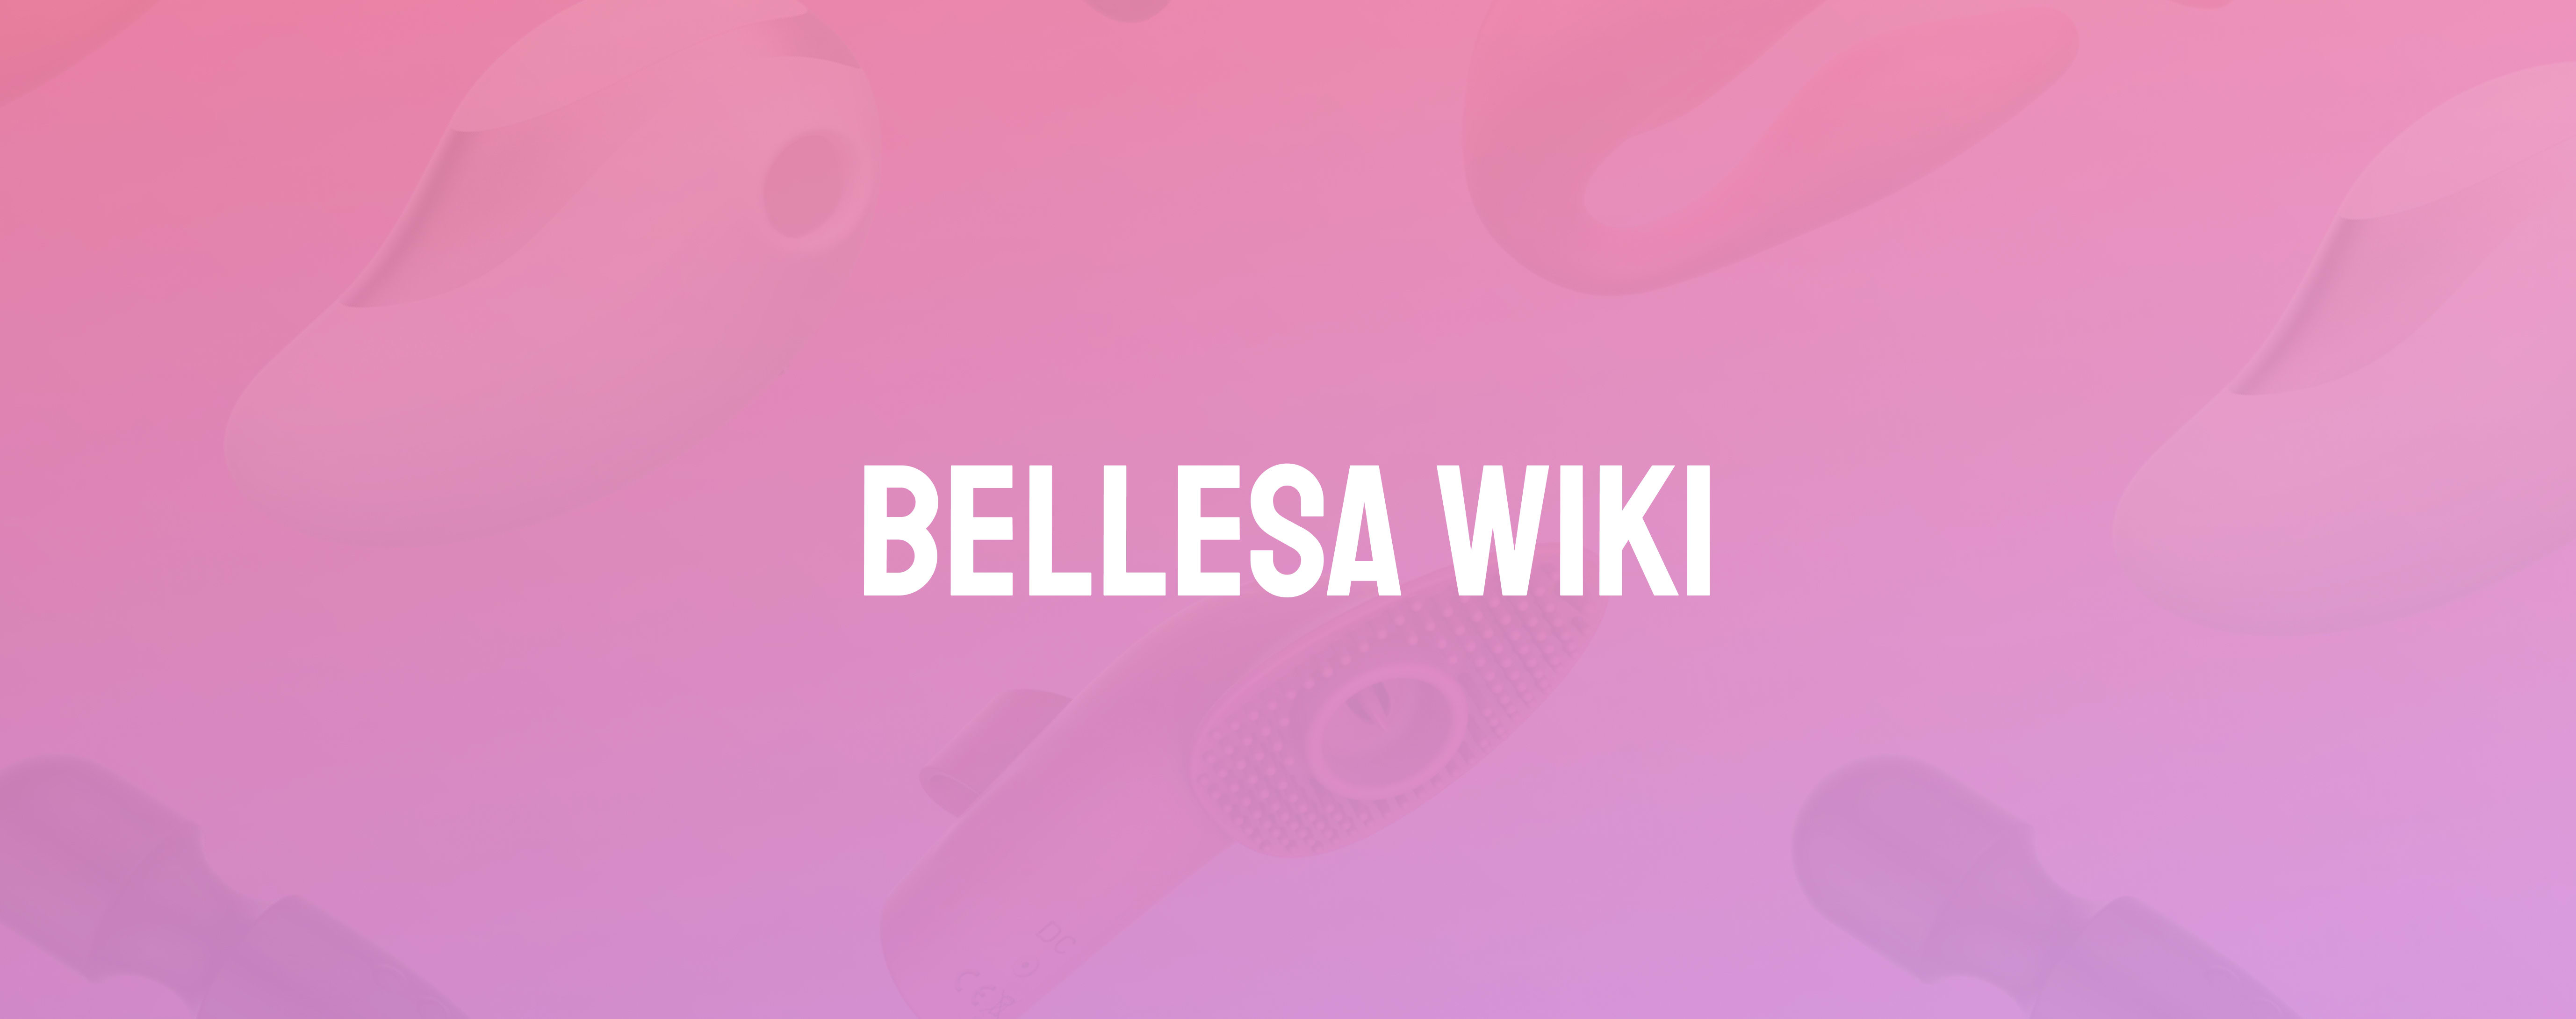 Group Sex - Bellesa Wiki Bellesa